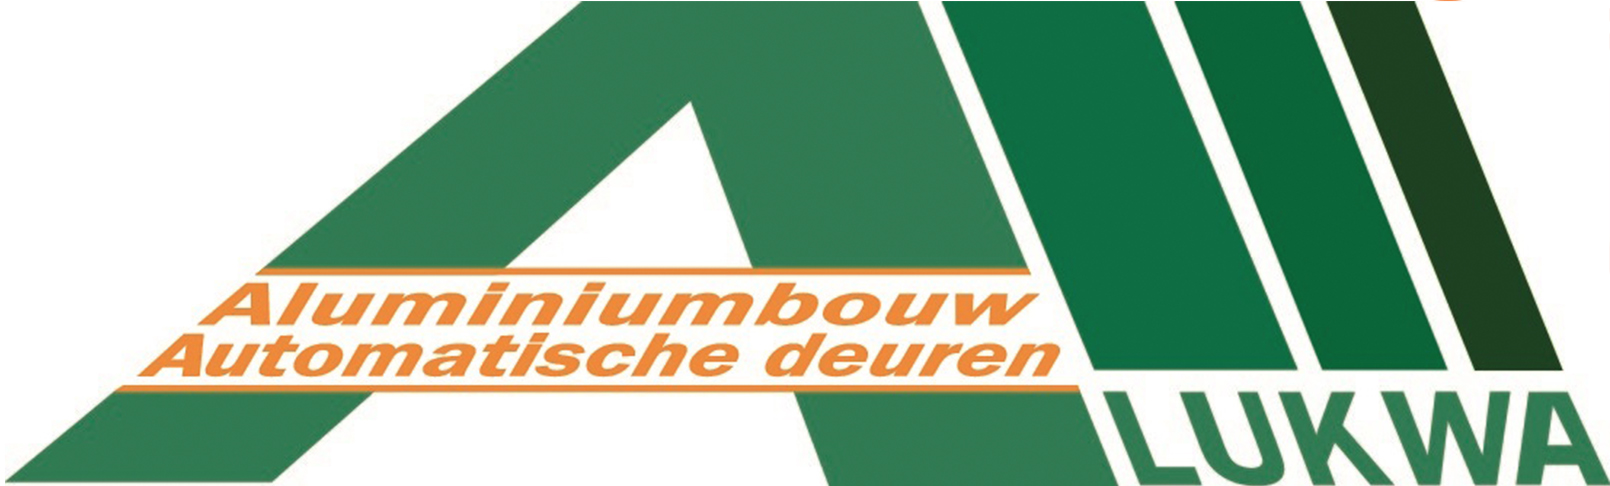 Alukwa logo Metalfinish Group